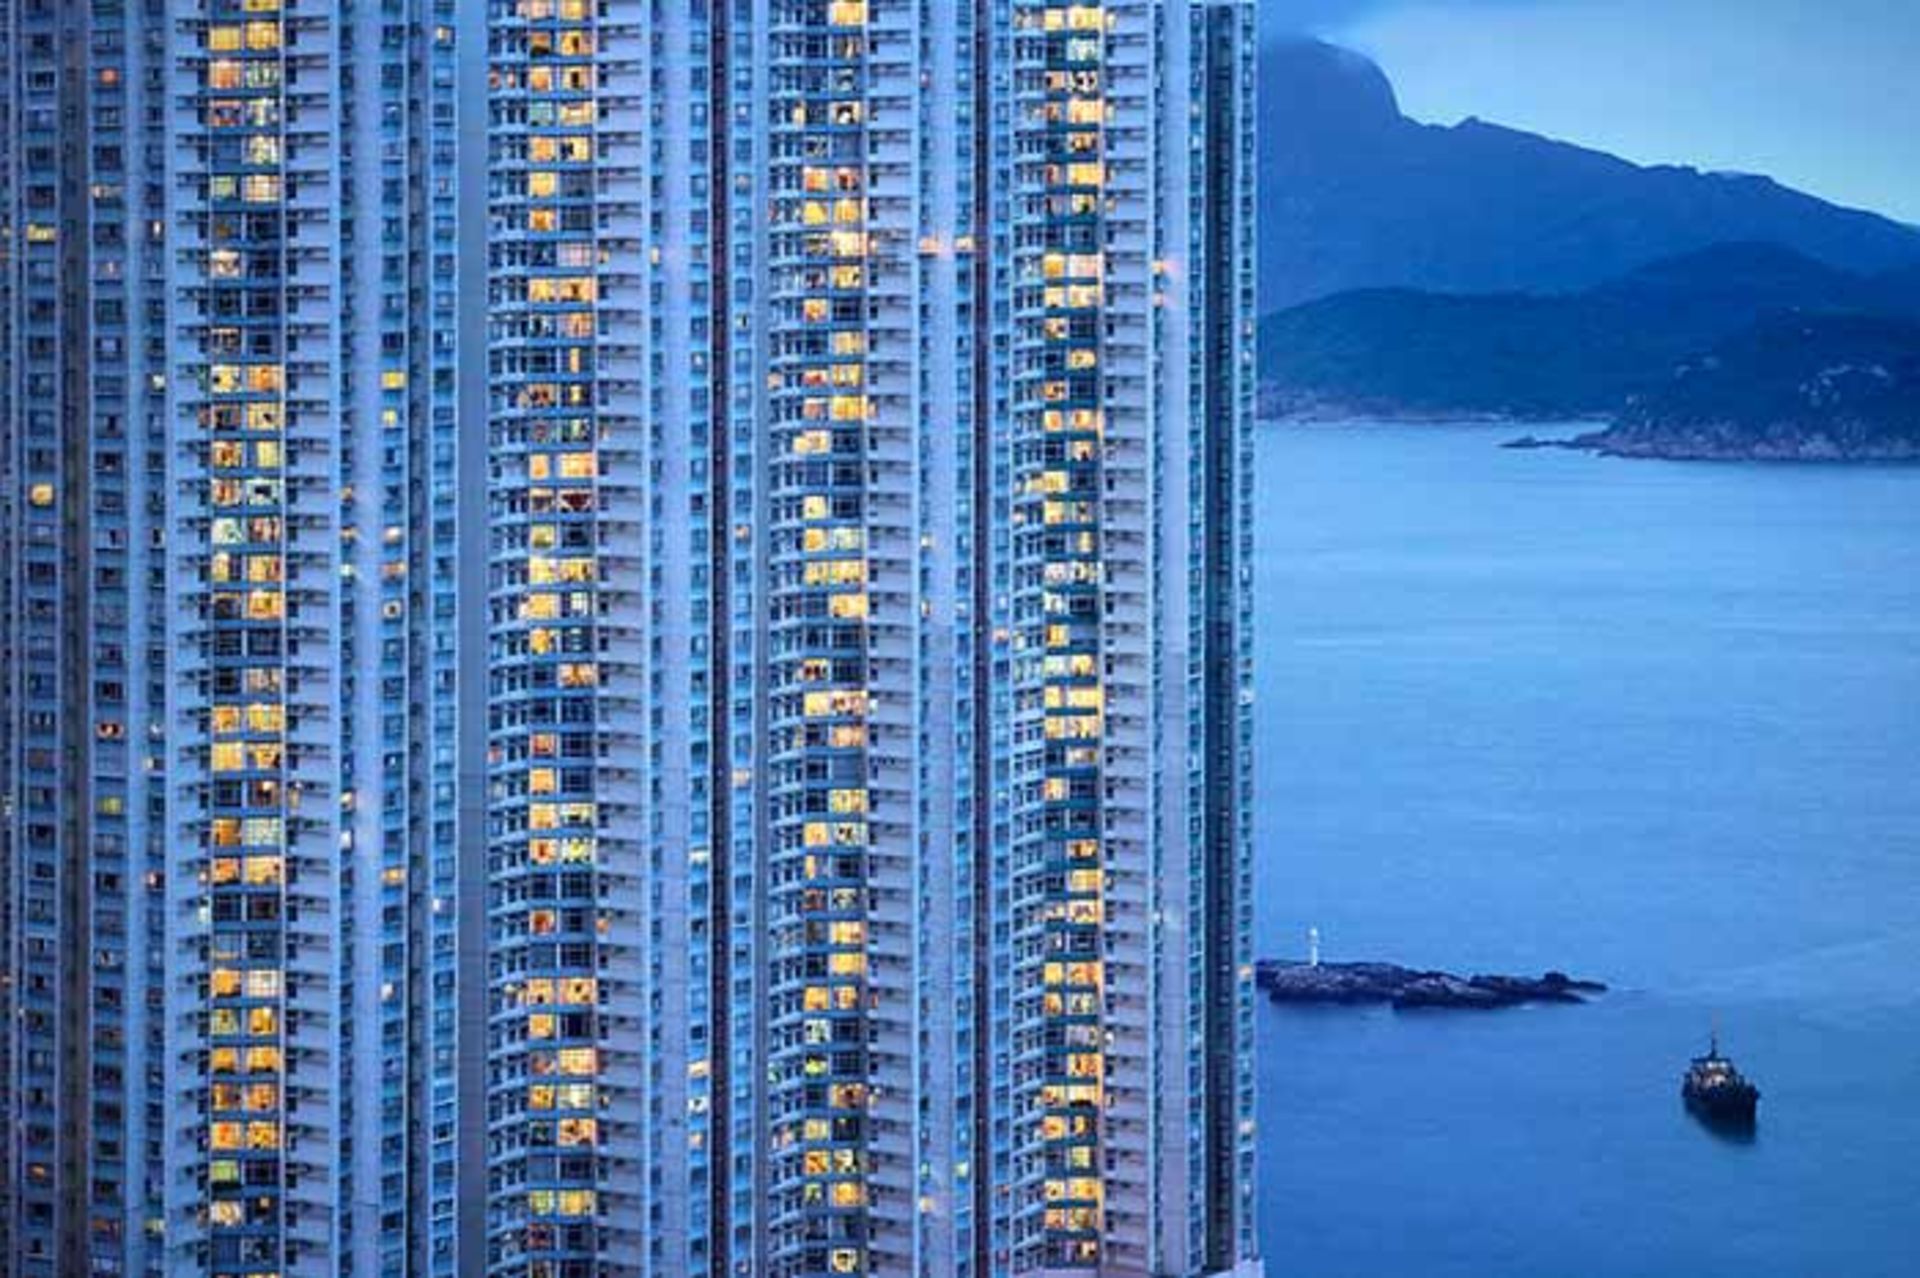 لحظات آبی هنگ کنگ